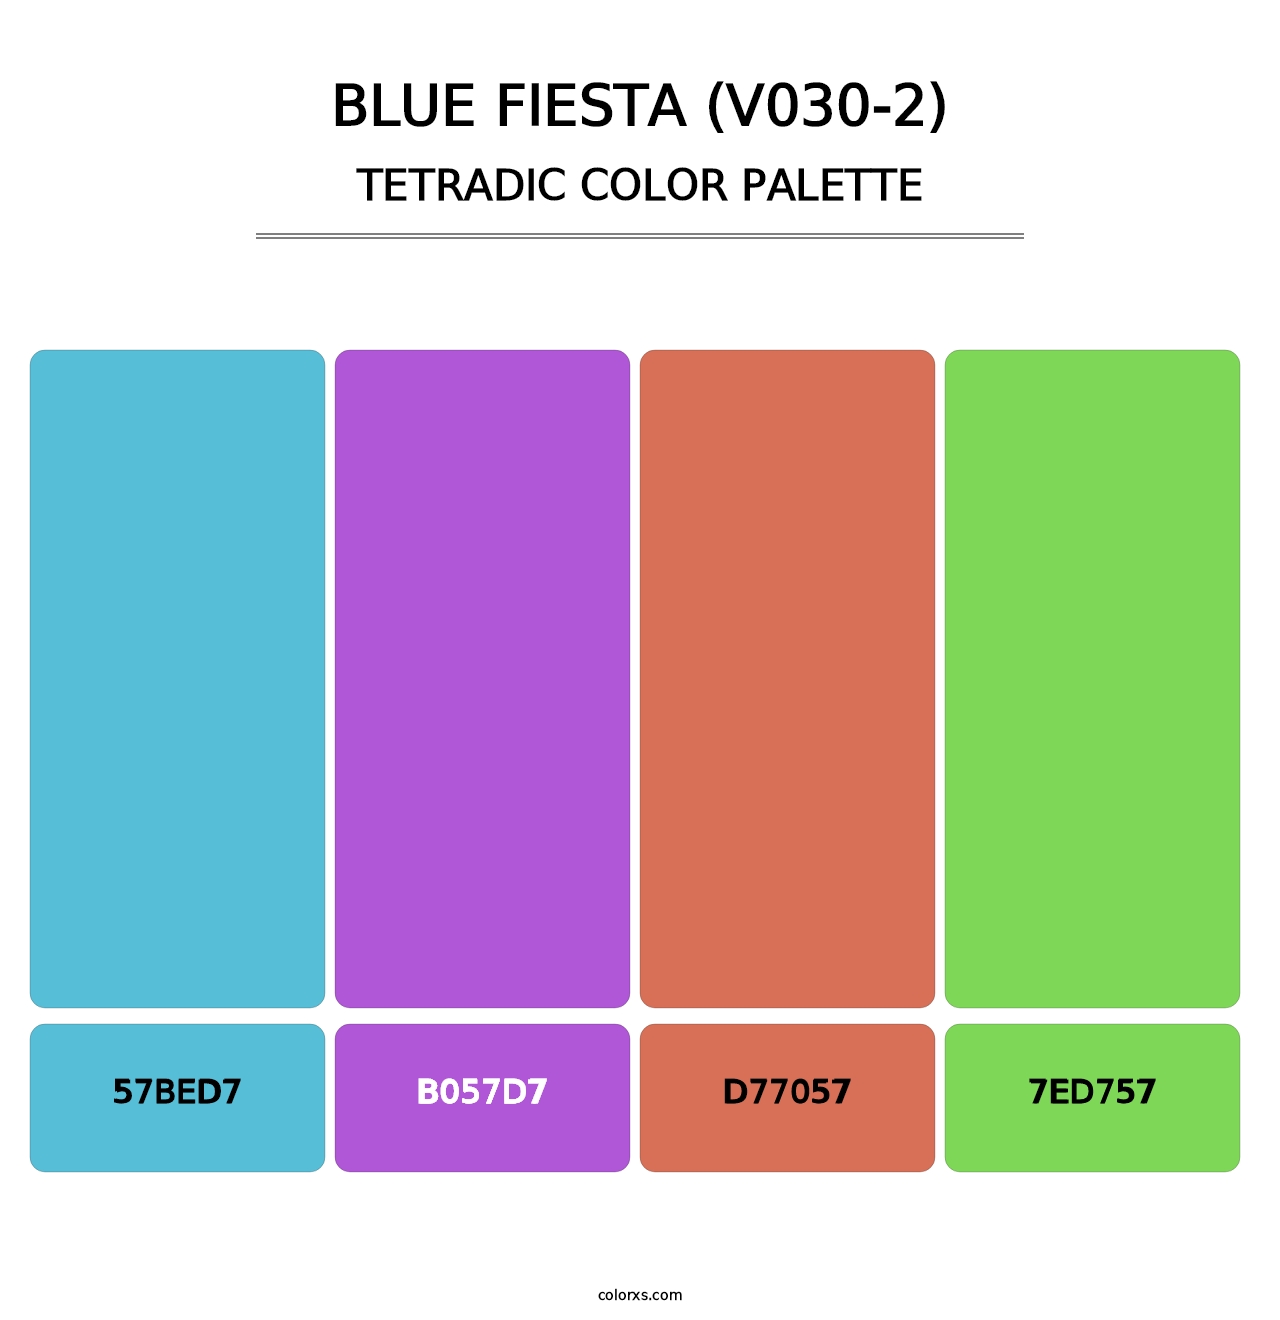 Blue Fiesta (V030-2) - Tetradic Color Palette